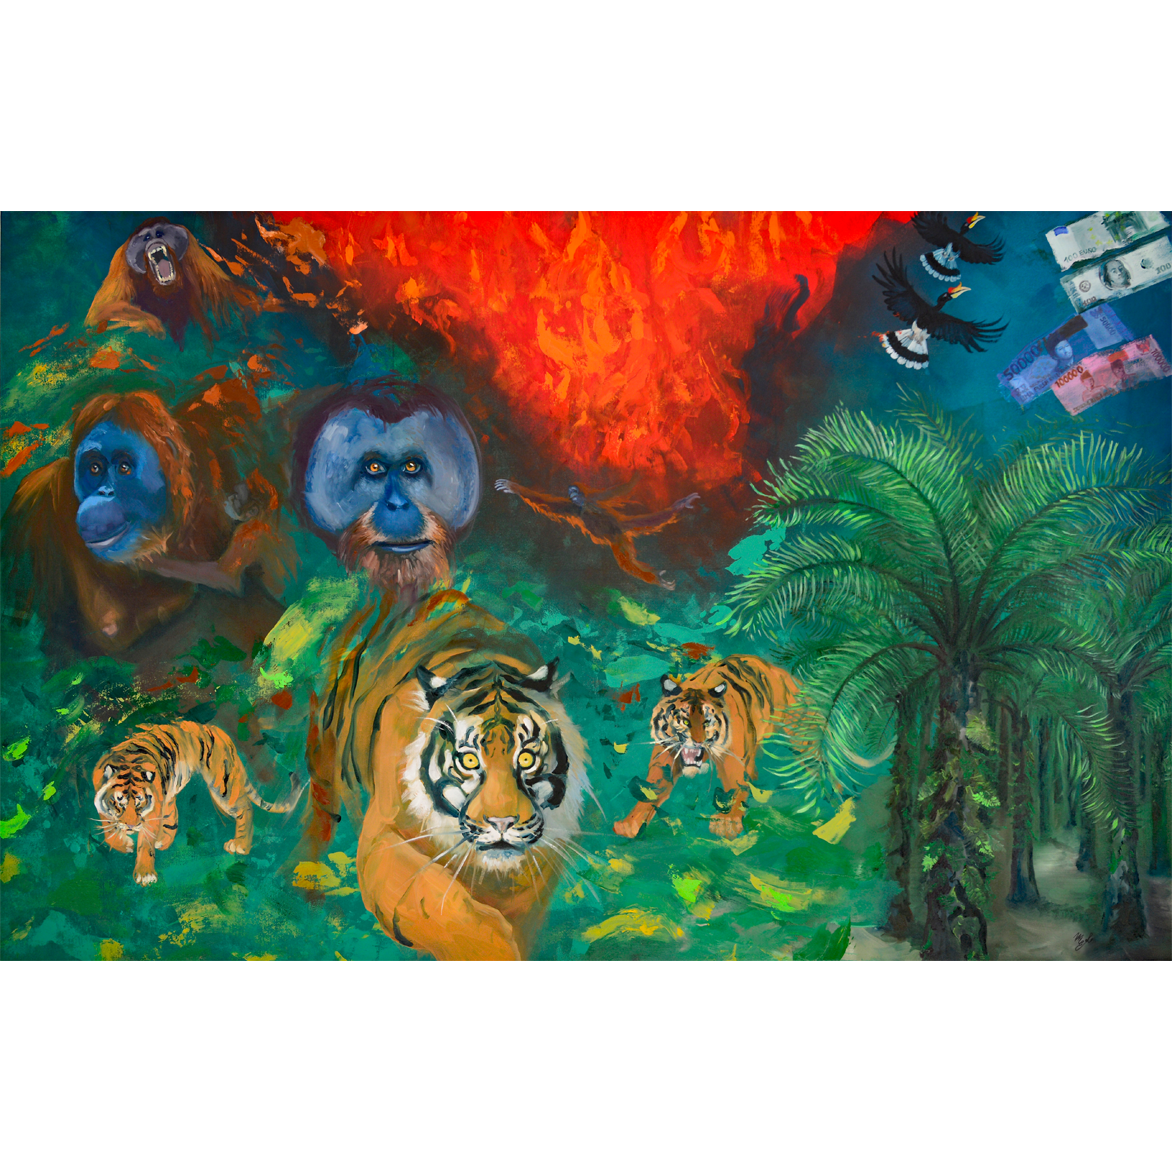 Sumatra Rainforest, oil on canvas